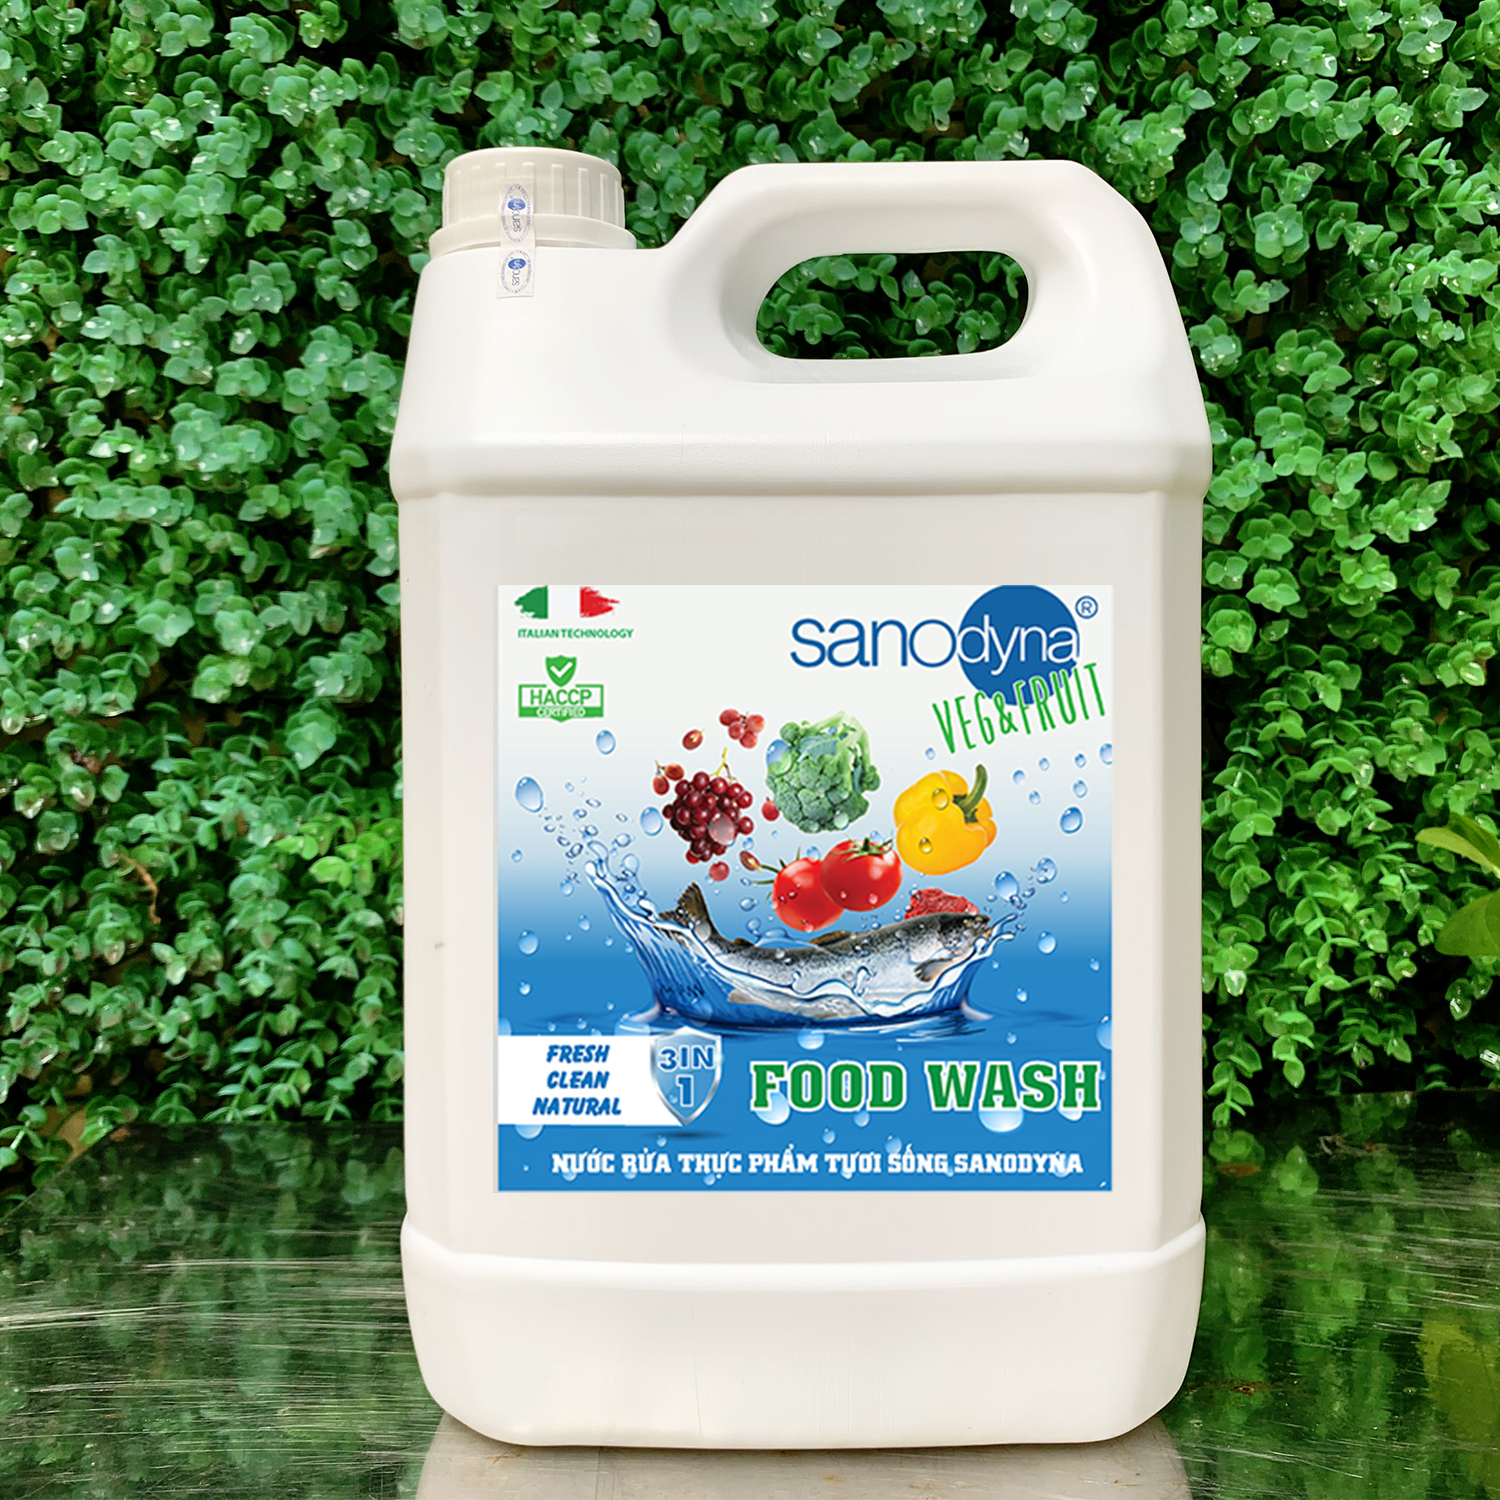 Nước rửa thực phẩm tươi sống Sanodyna Food Wash - 100% Tự Nhiên - thương hiệu từ ITALIA – dung tích 5 lít